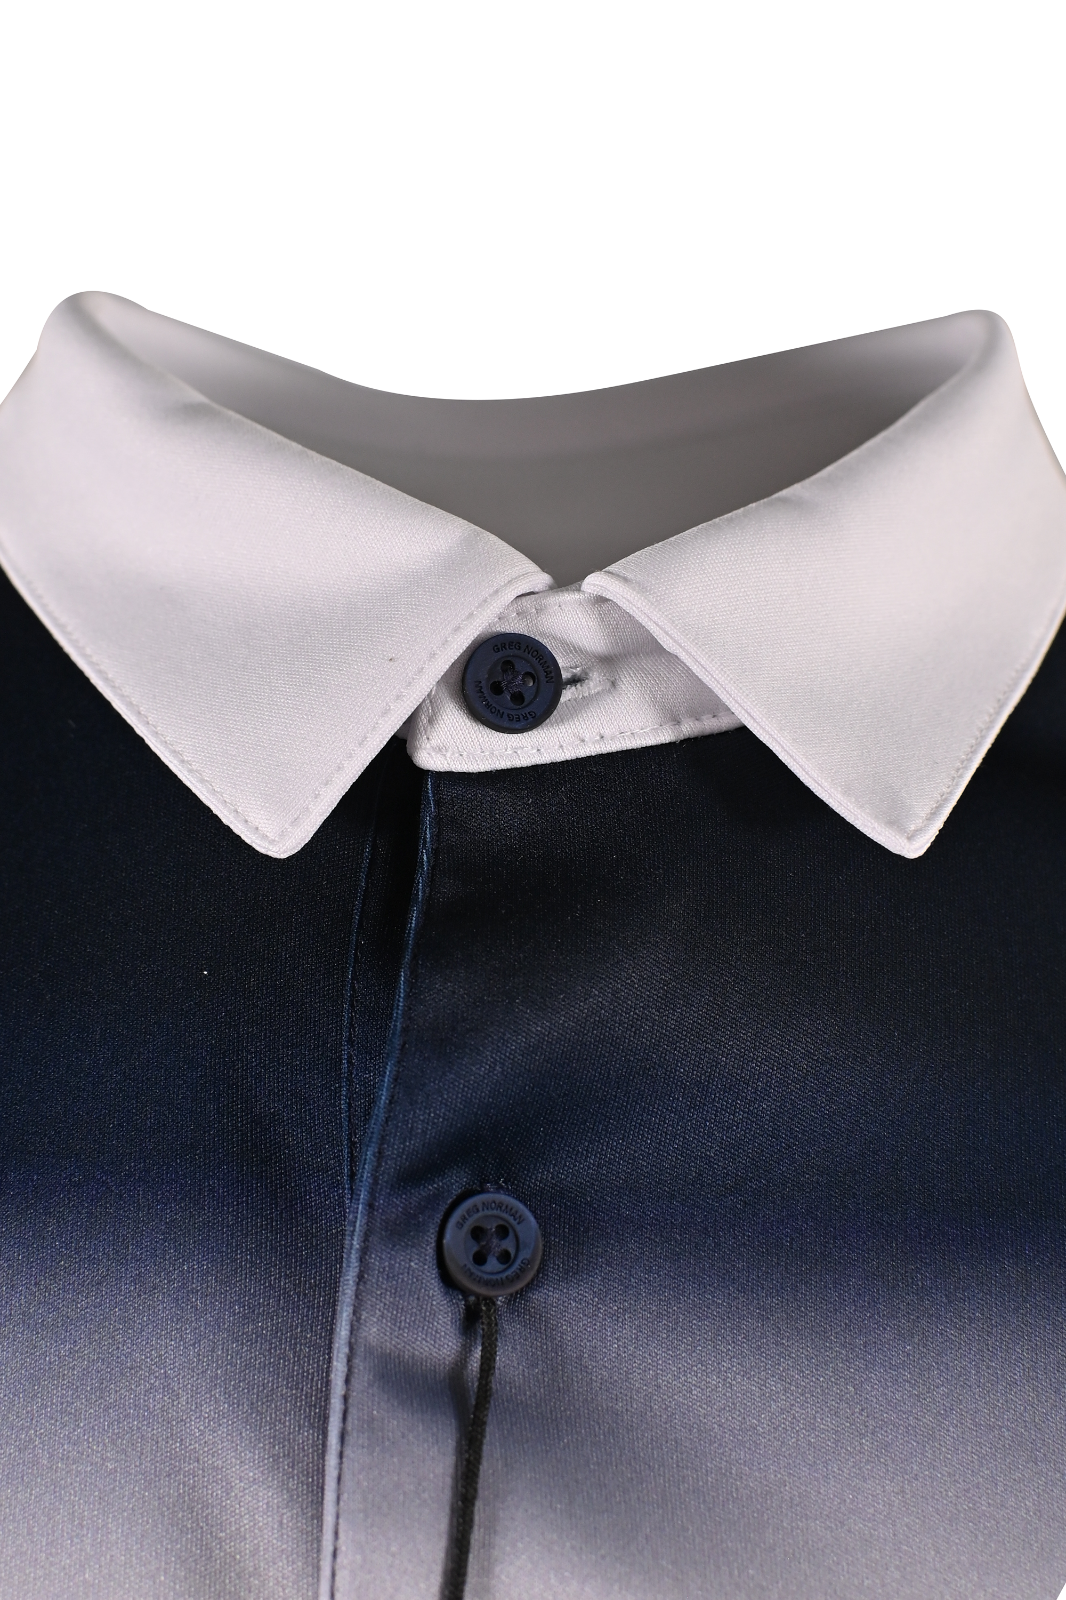 Greg Norman Men's Polo T-Shirt Blue Gradient (S16)